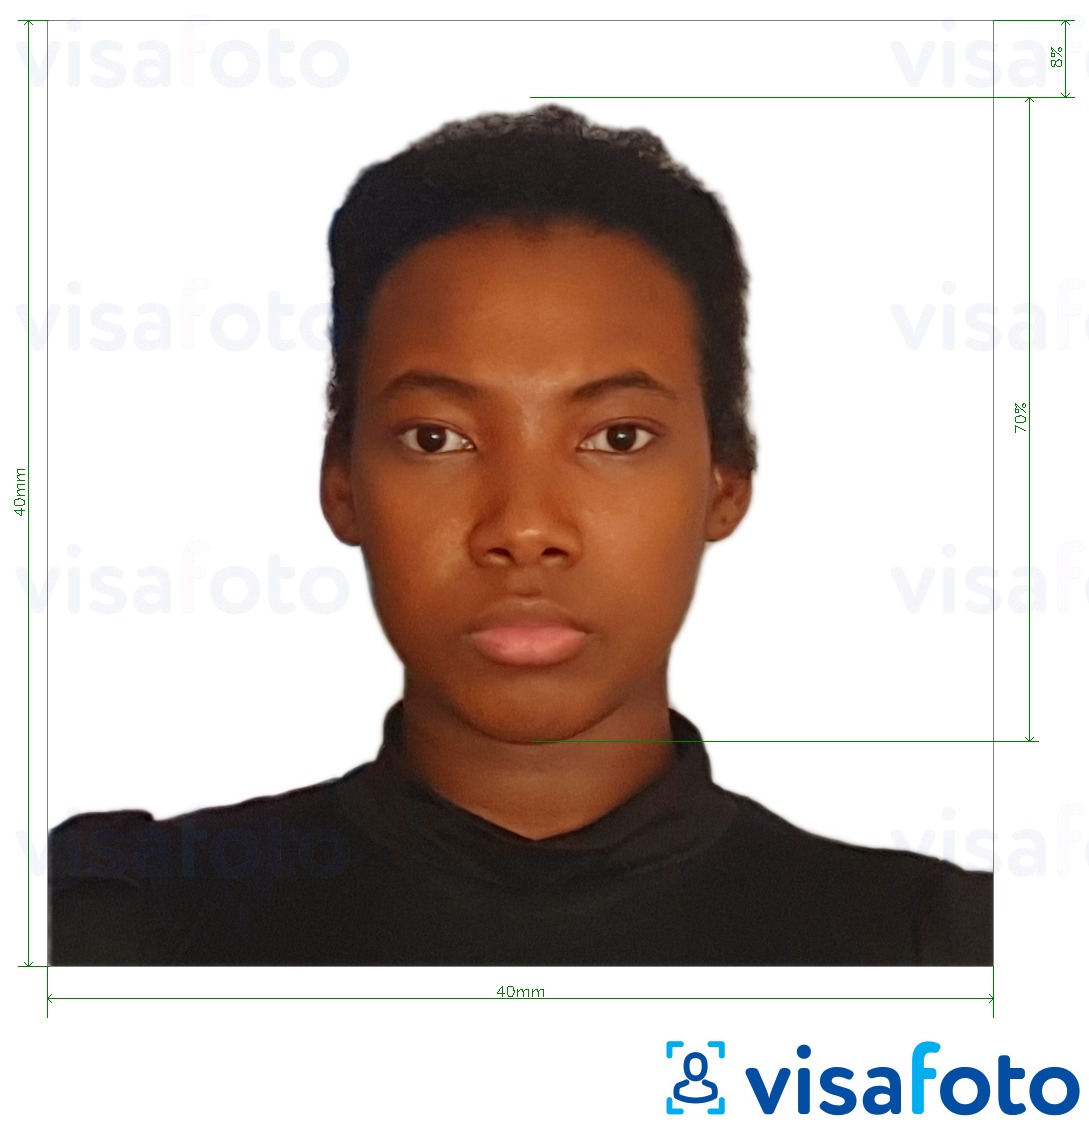 نمونه ی یک عکس برای گذرنامه ماداگاسکار 40x40 میلی متر با مشخصات دقیق